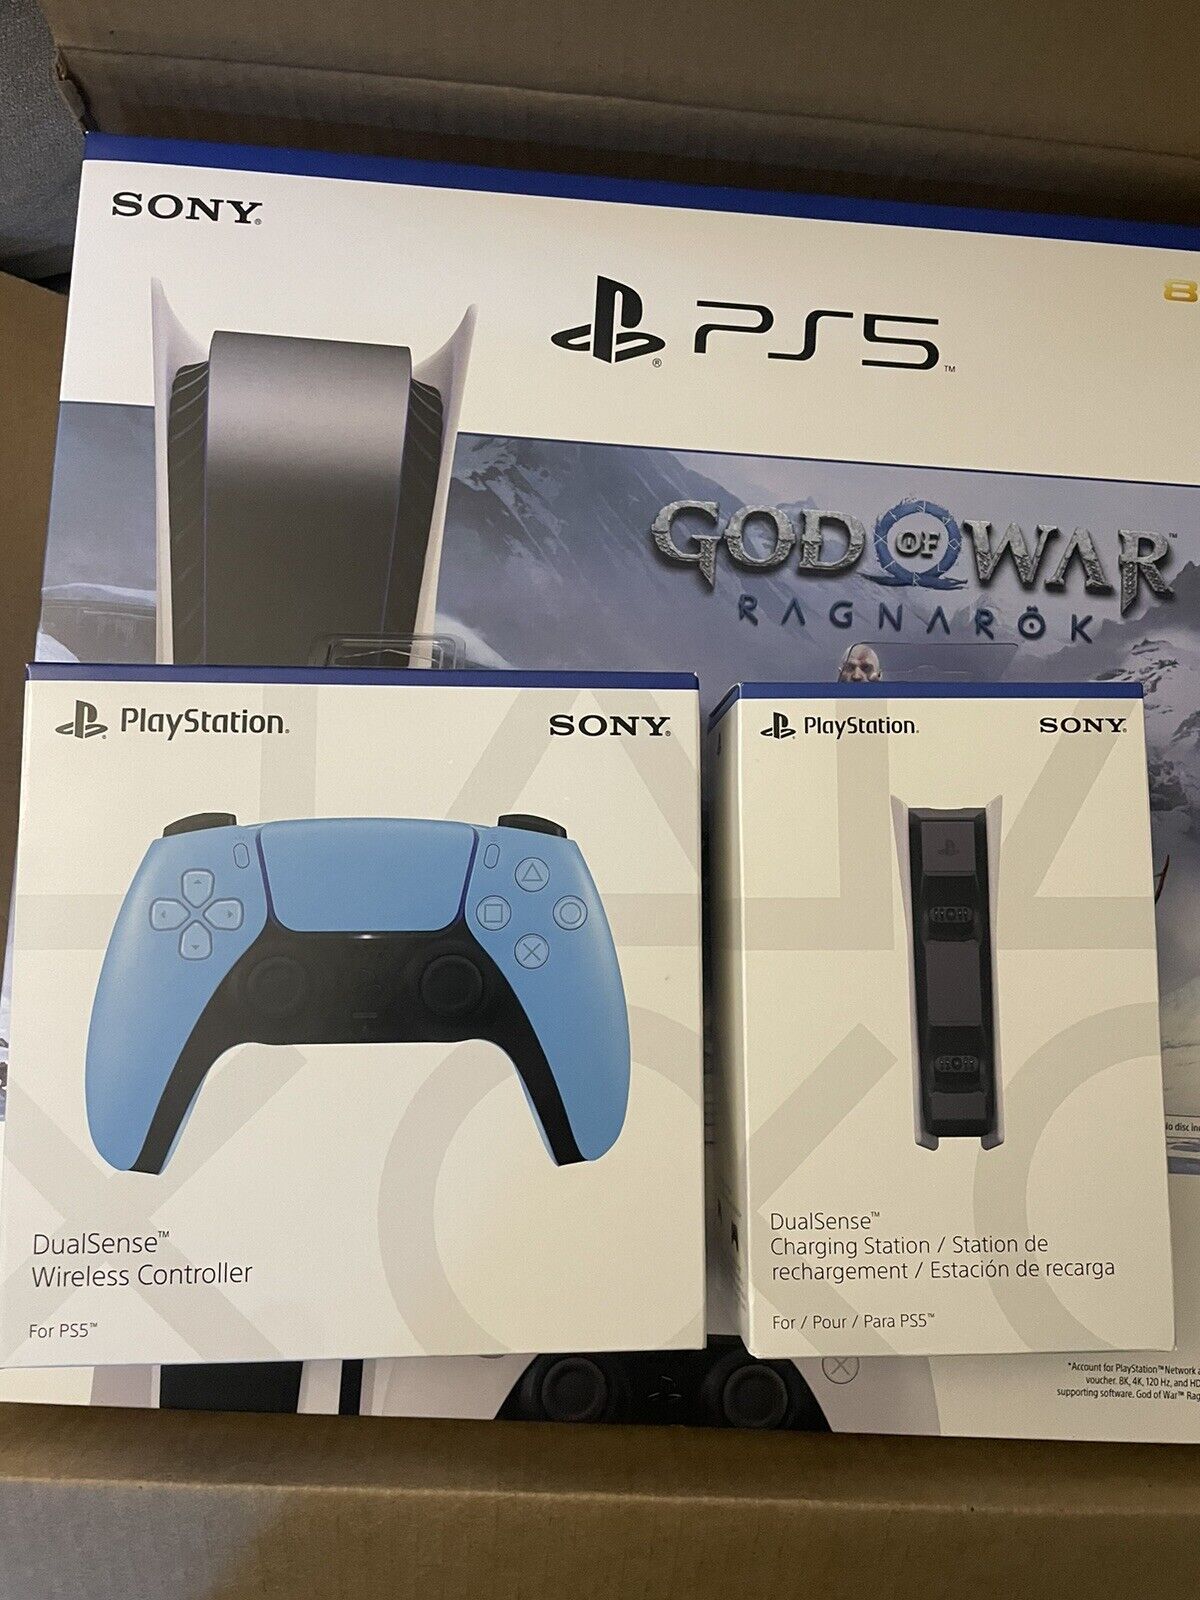 Buy God of War: Ragnarök PS5 Playstation Store